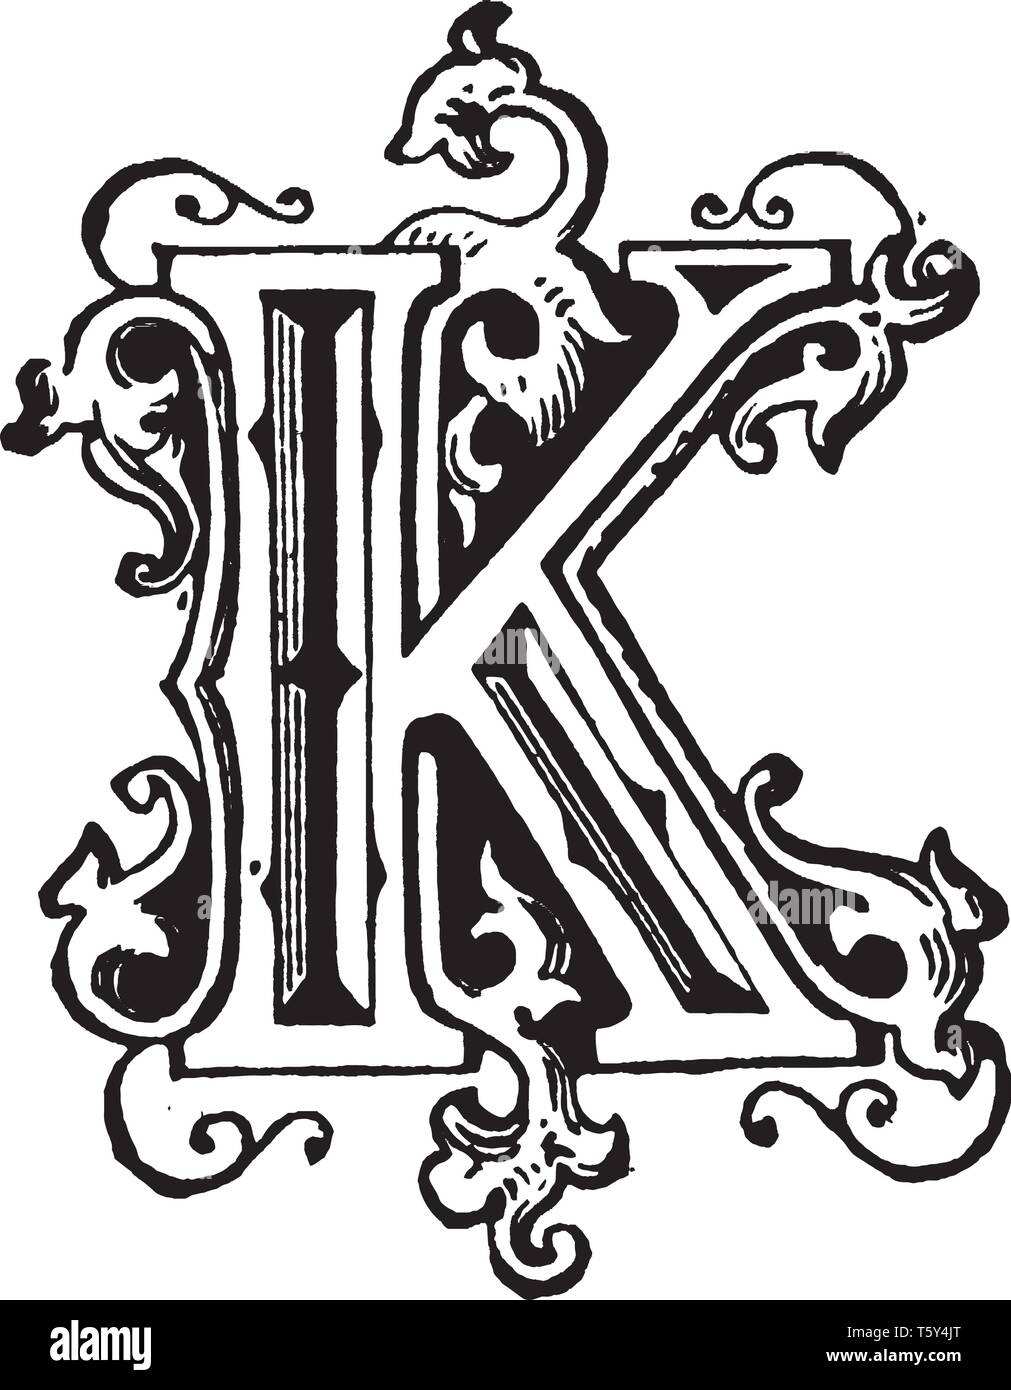 Dibujo de la letra k Imágenes vectoriales de stock - Alamy